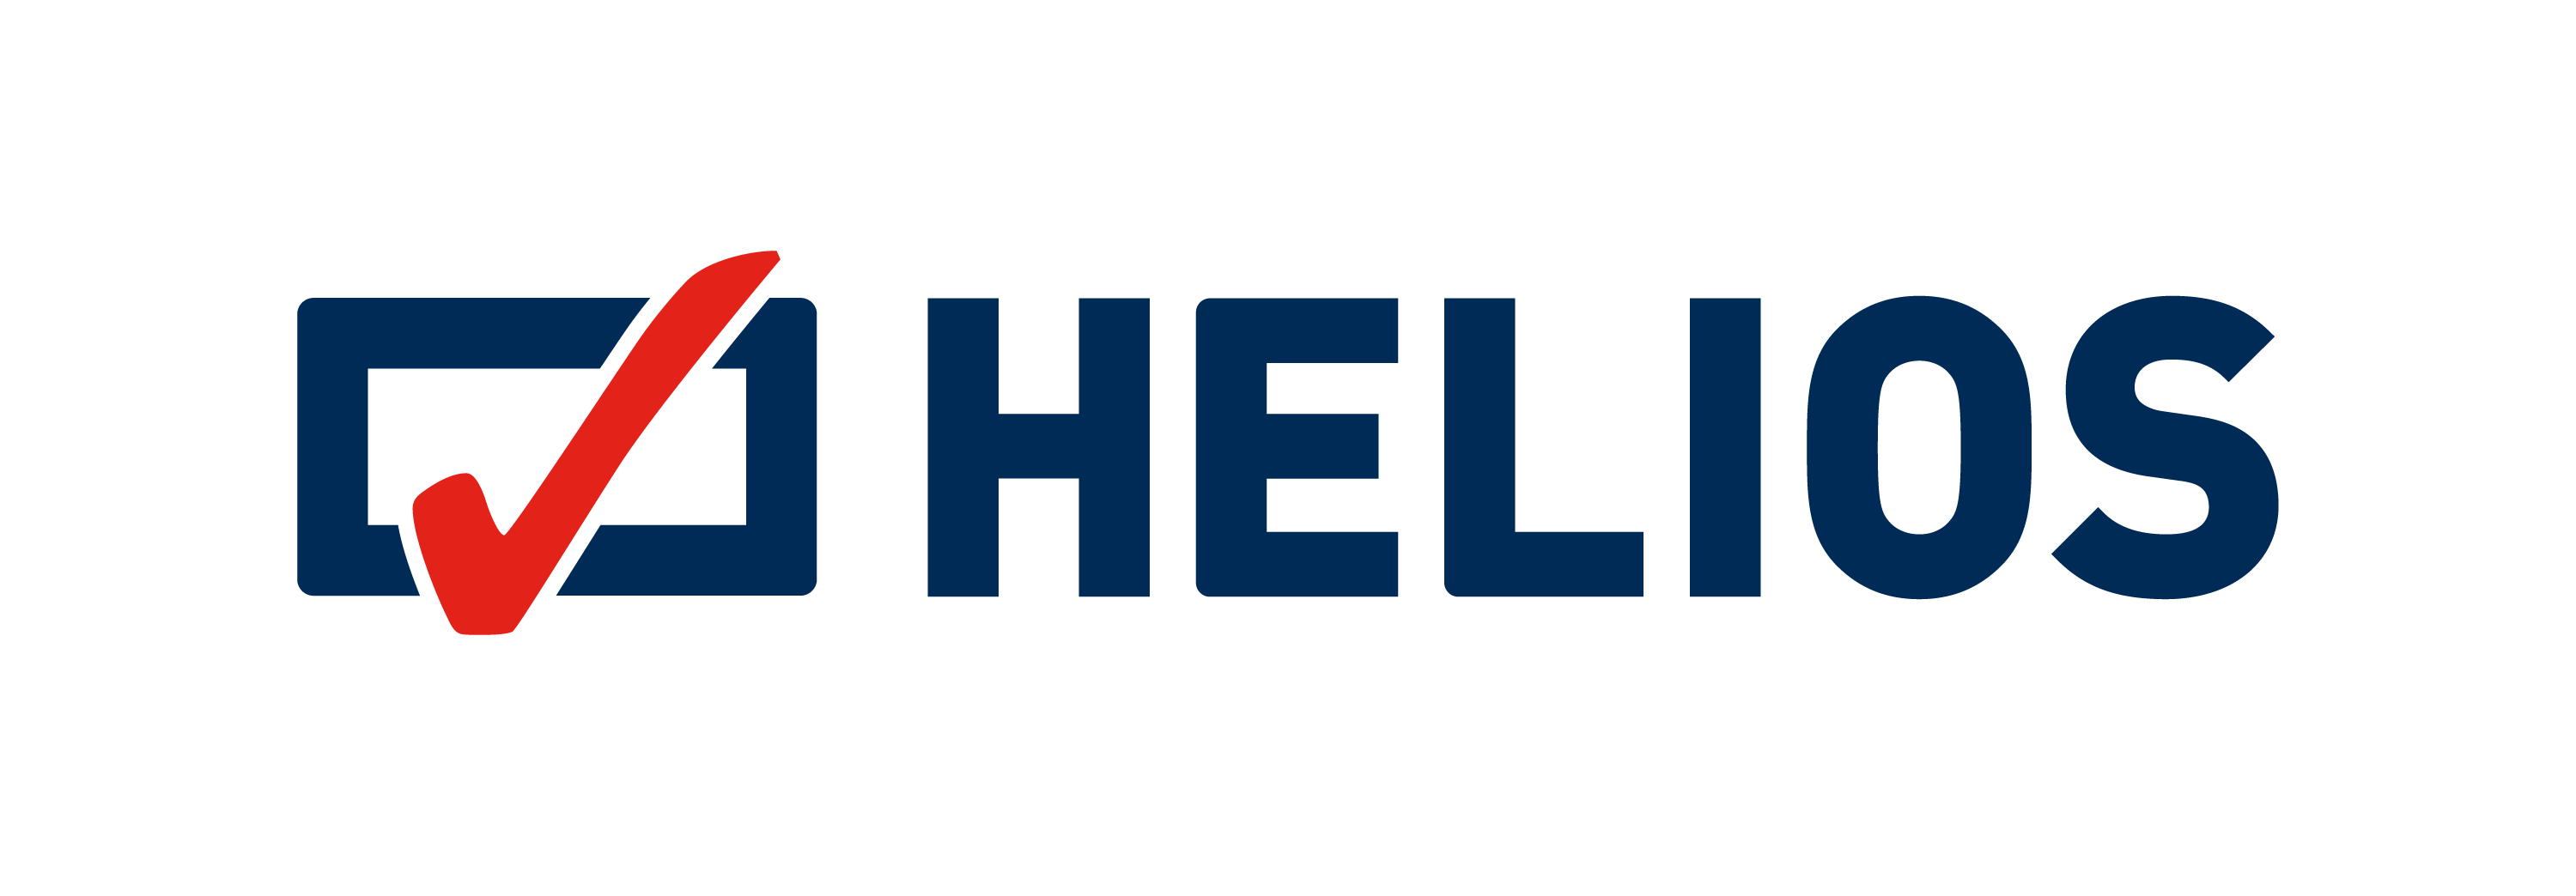 zdjęcie przedstawia logotyp kina helios